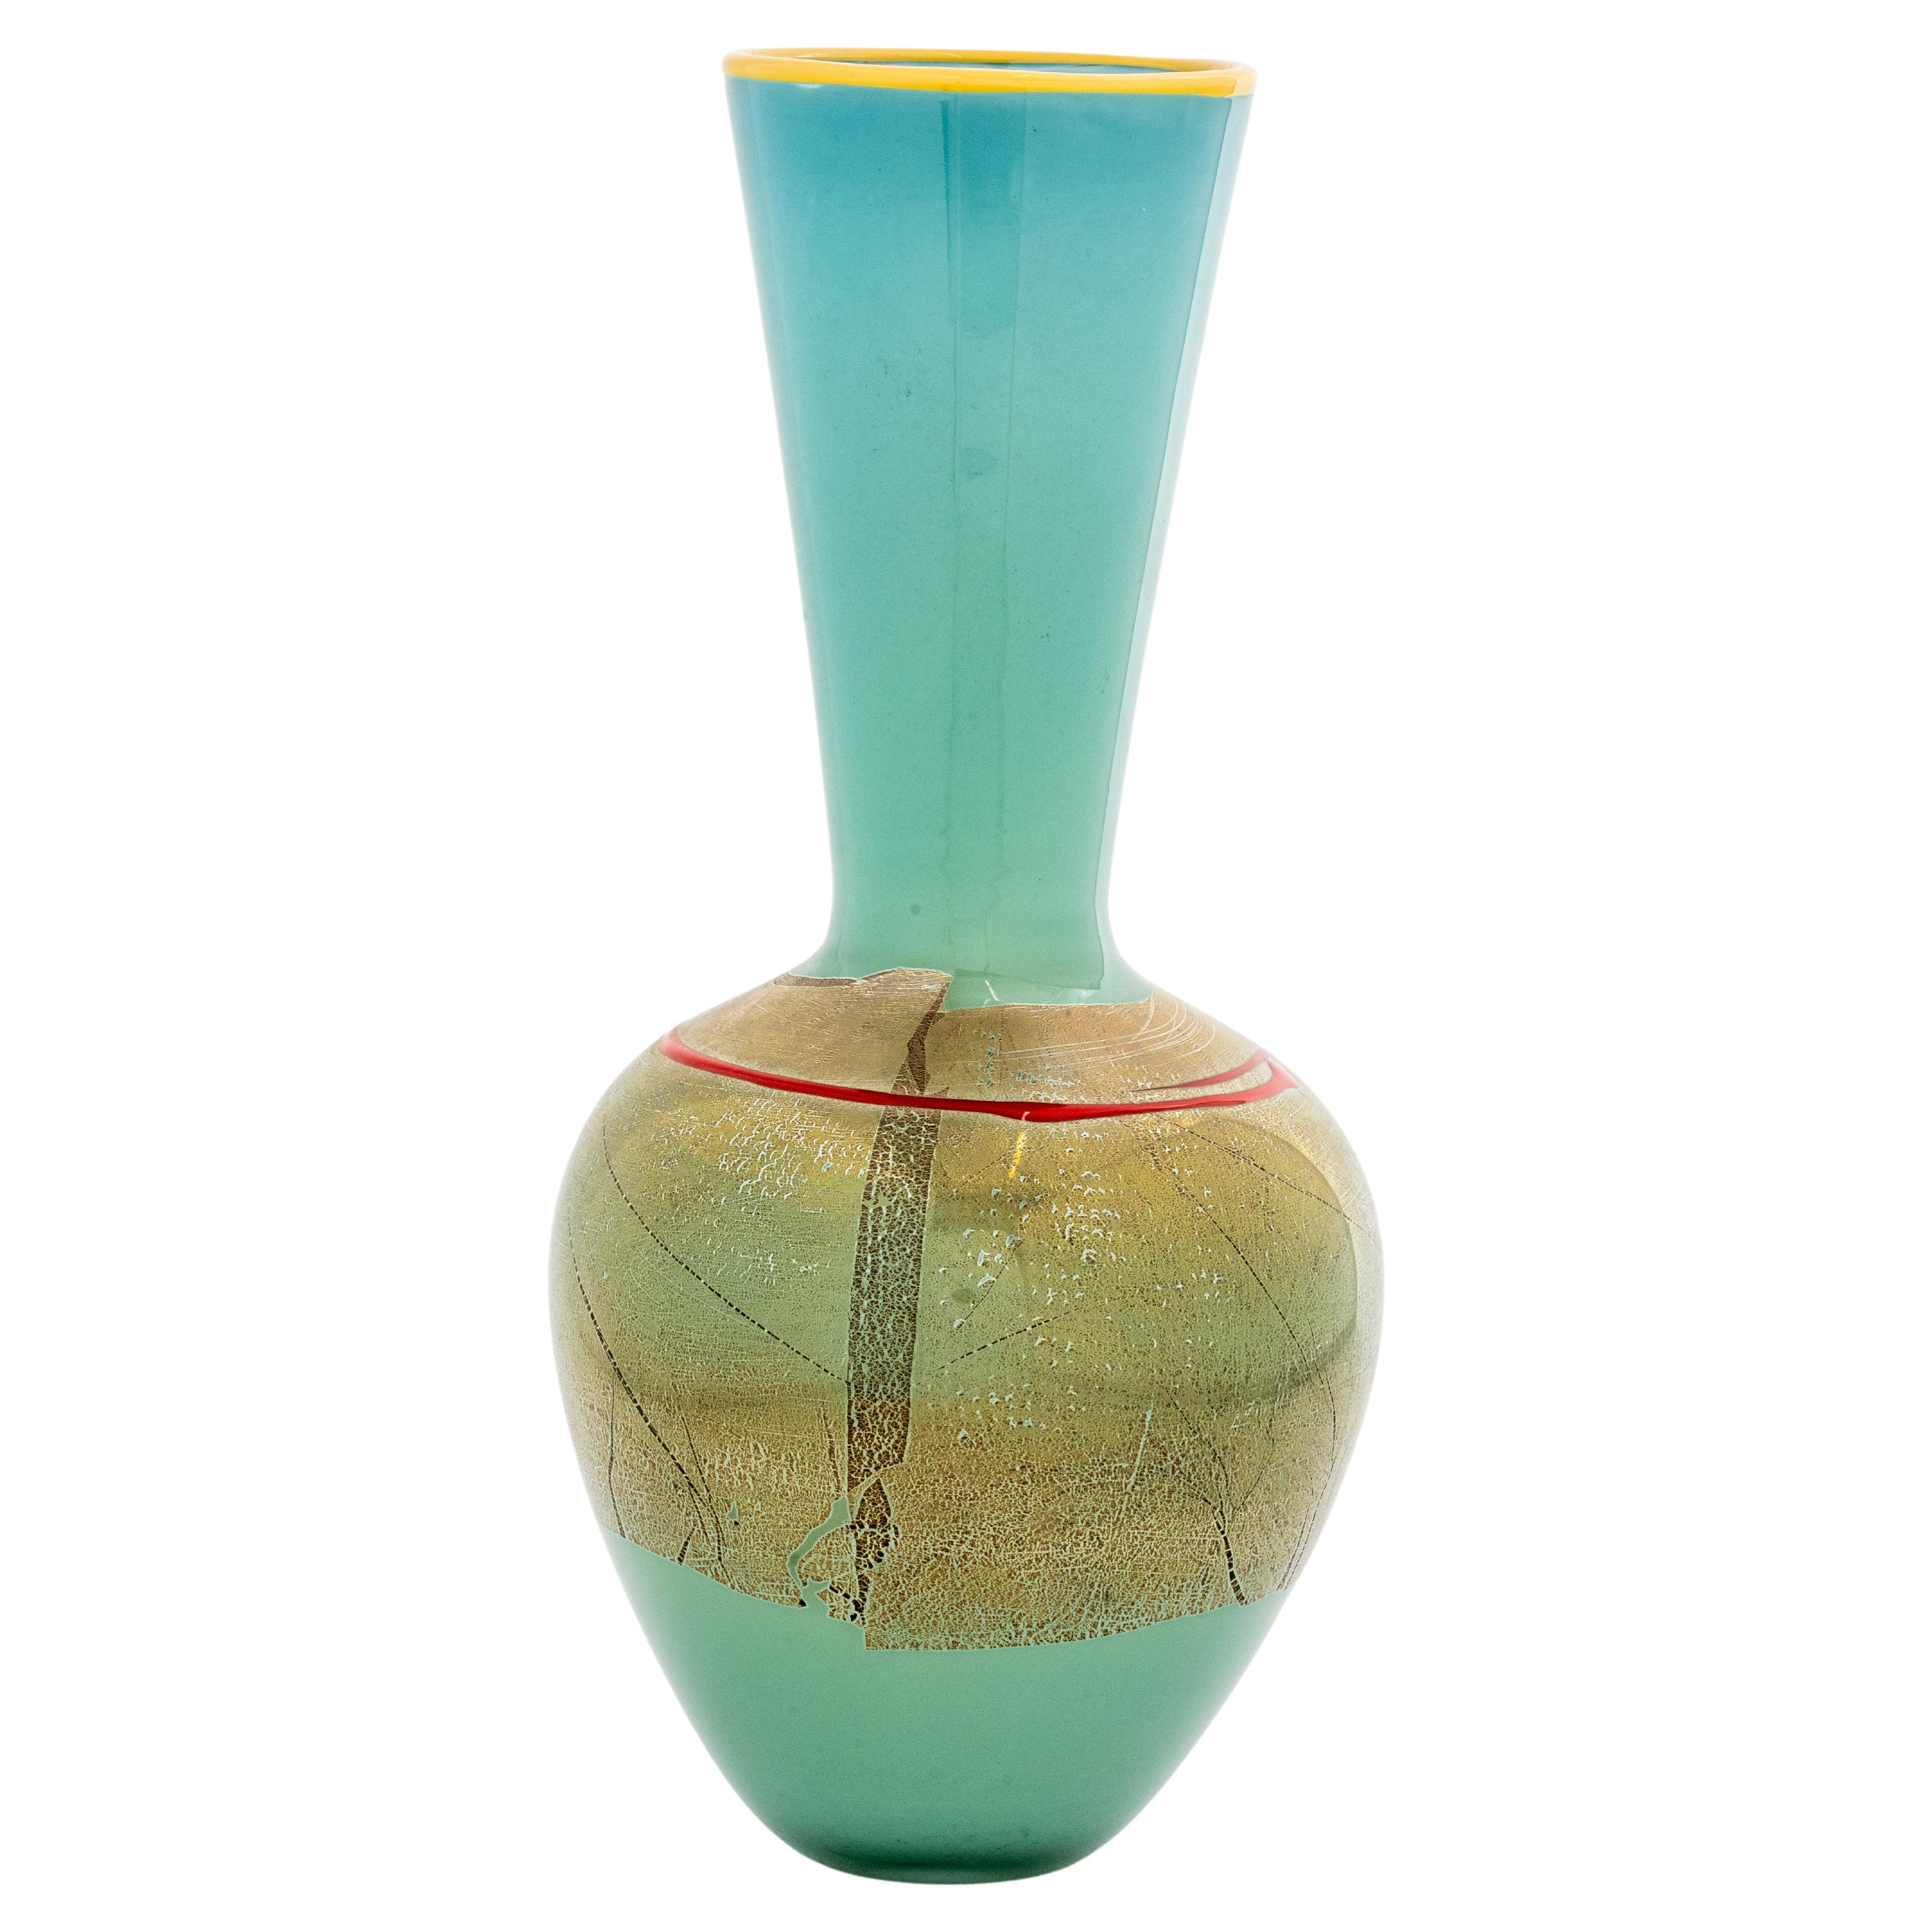 Signed Studio Paran Modernist Art Glass Vase For Sale